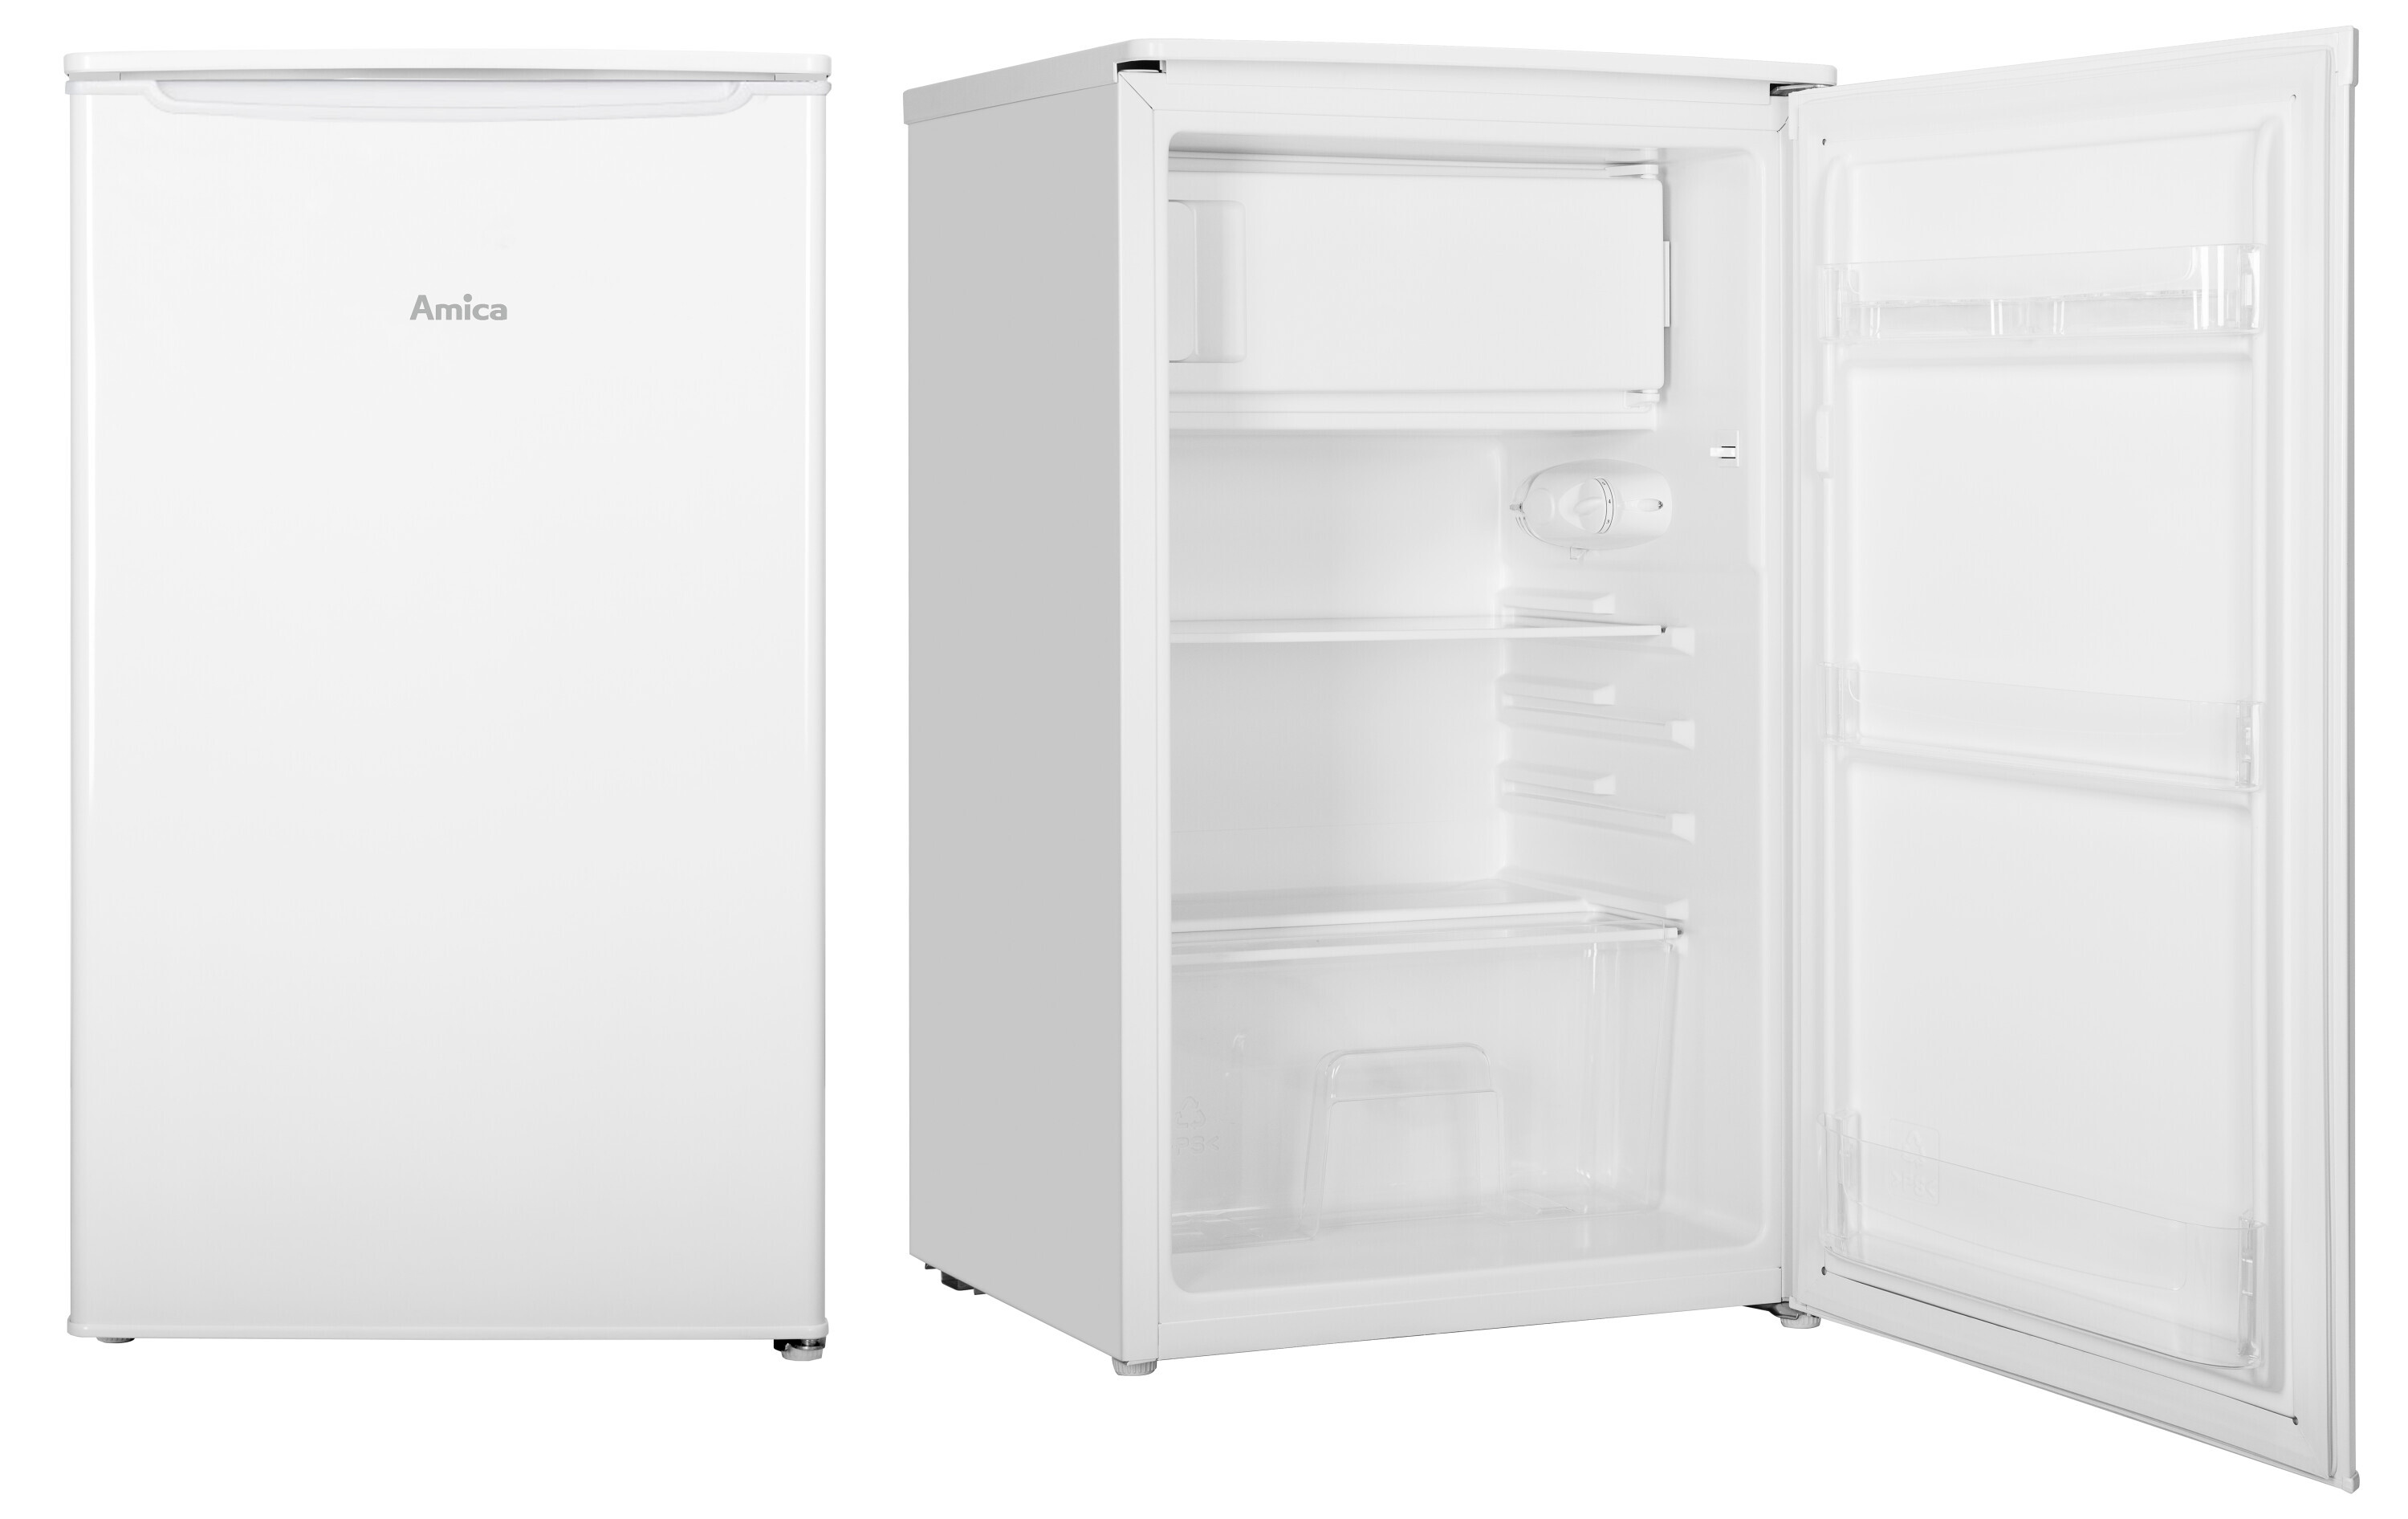 Freestanding refrigerator